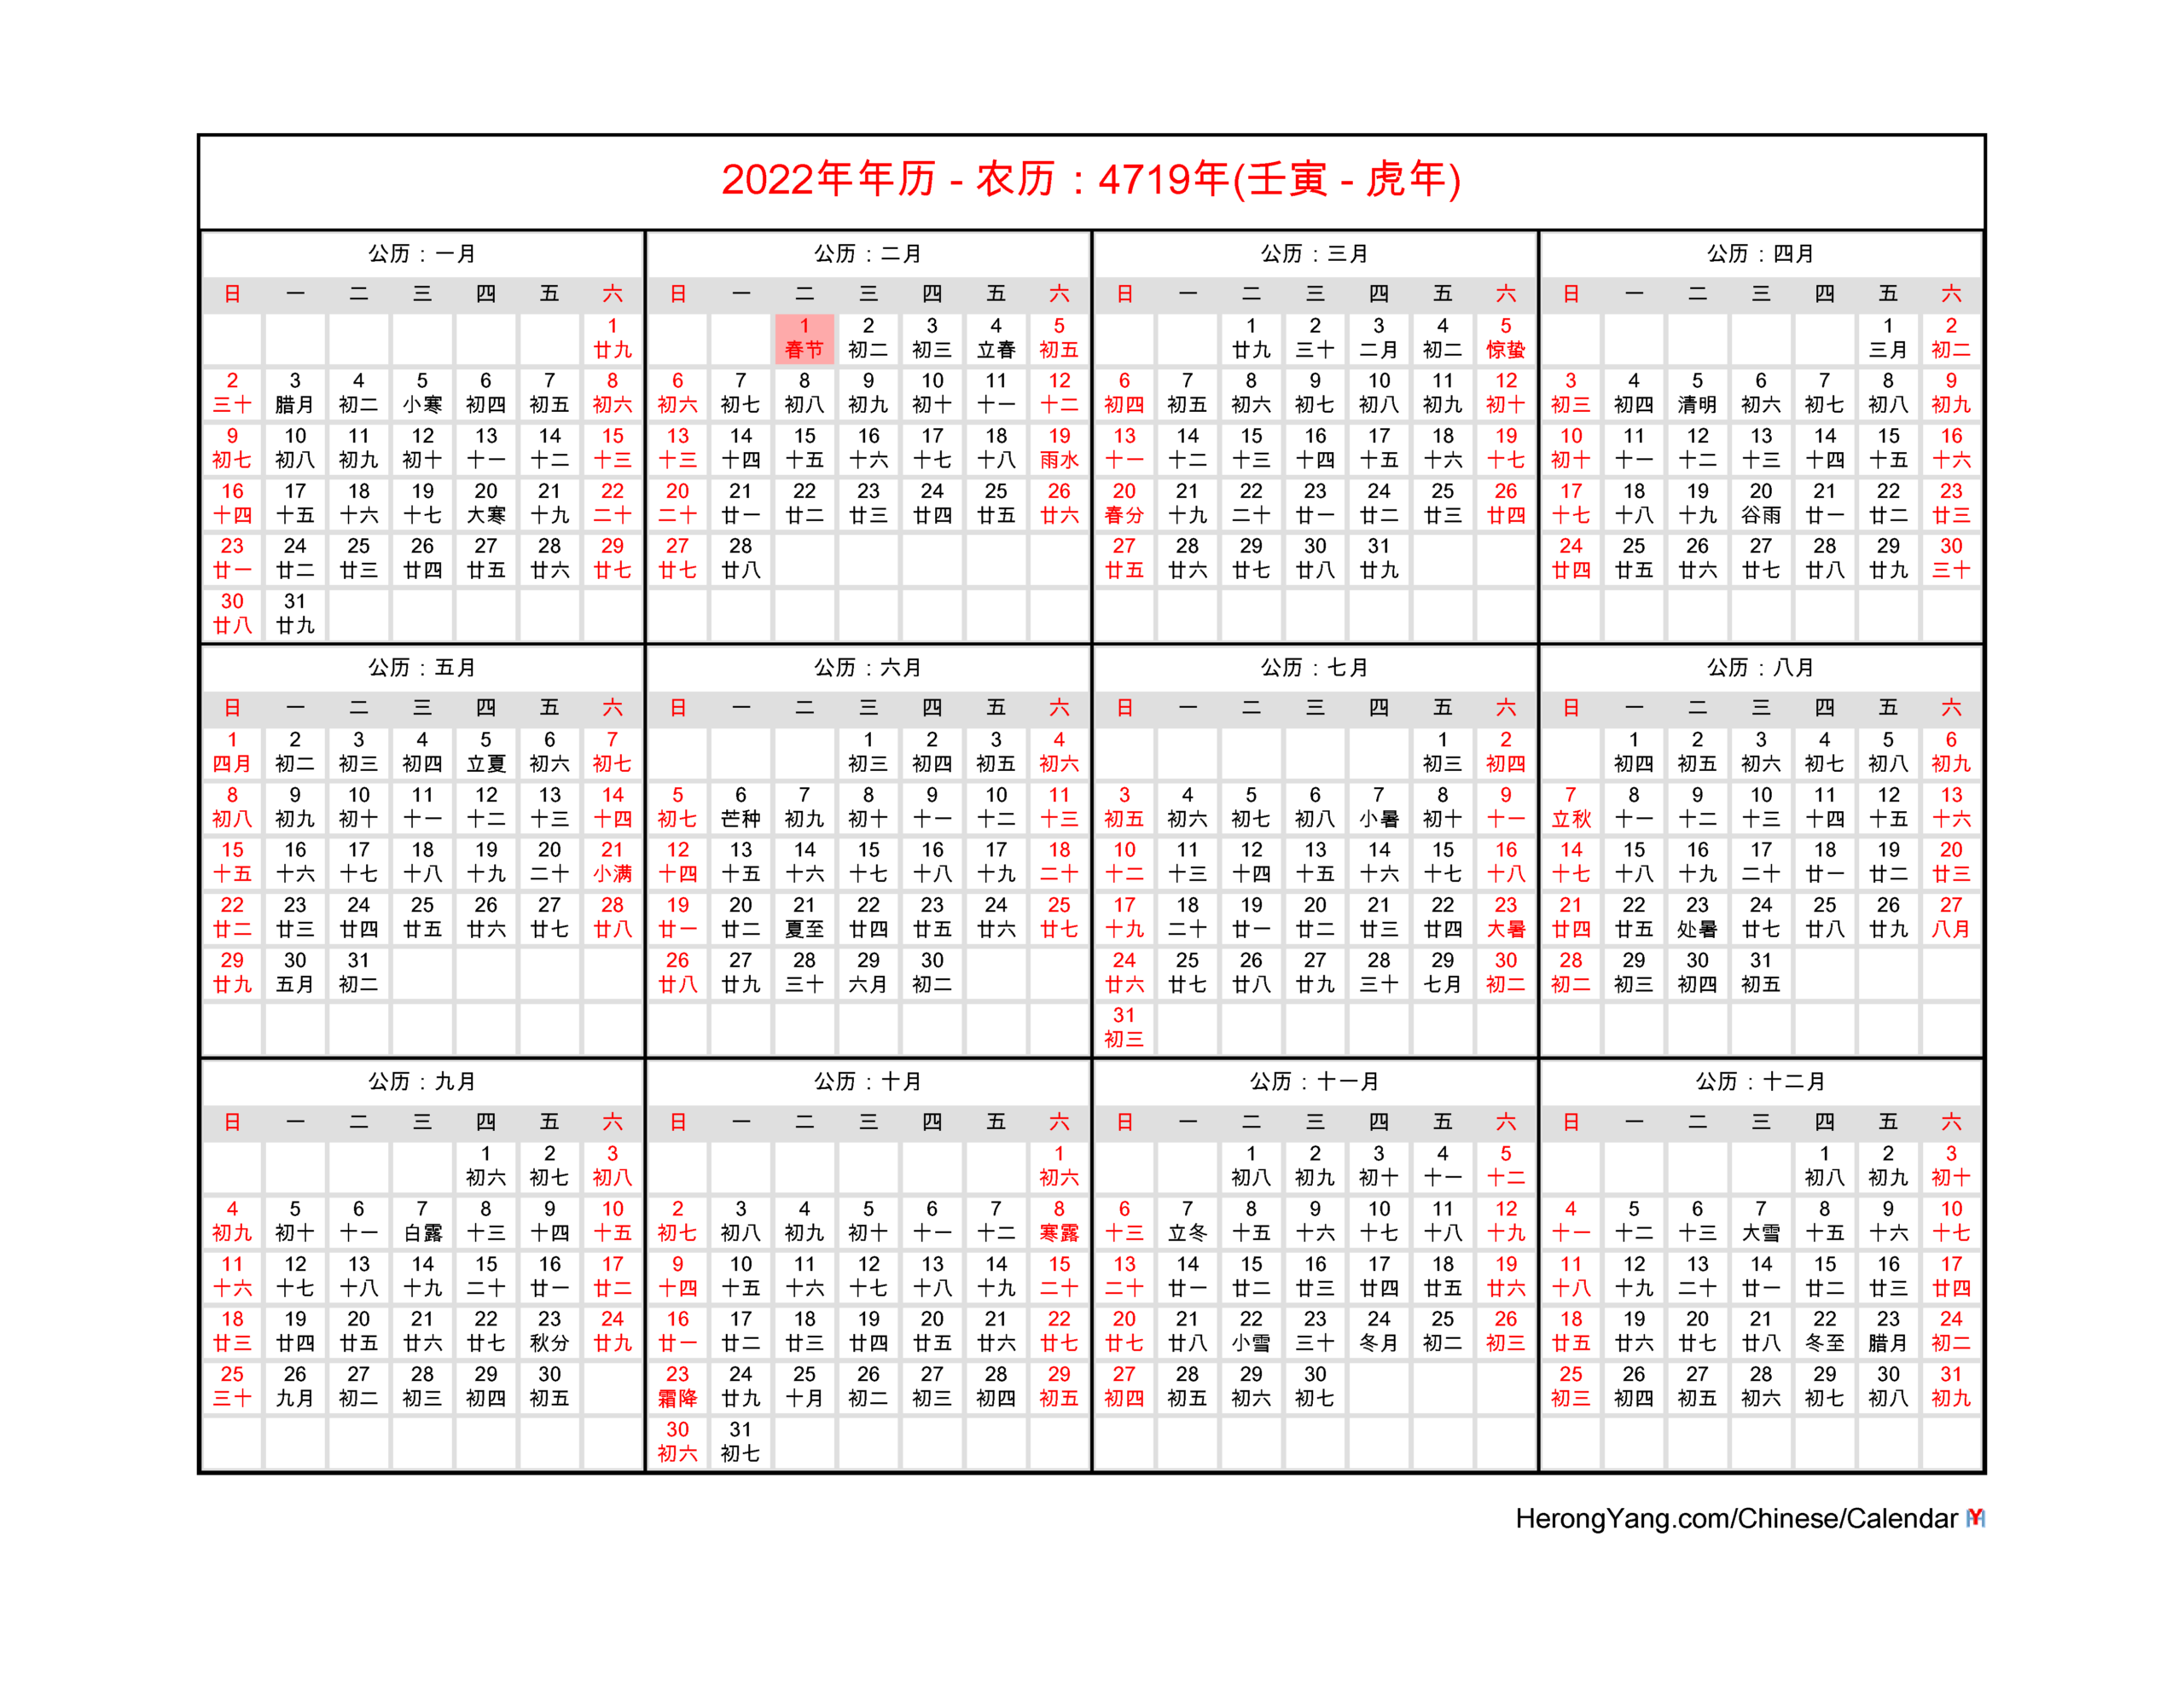 Get Calendar 2022 Luna August